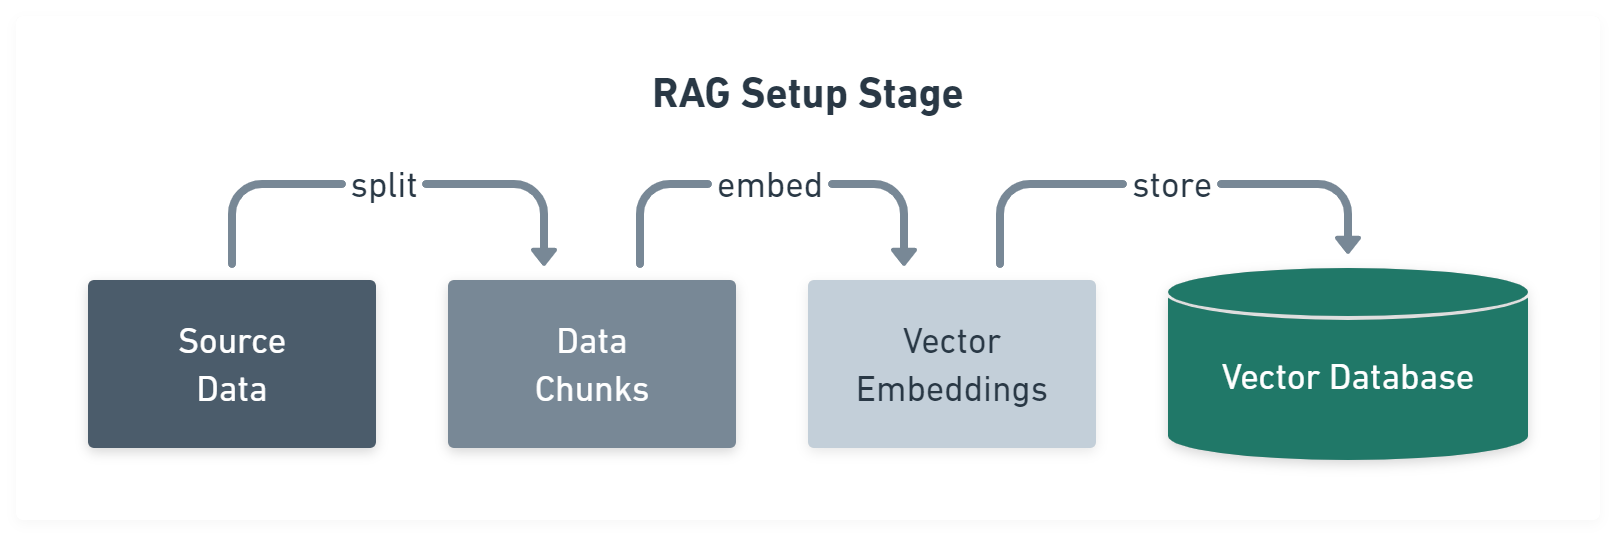 Figure 1: RAG setup stage